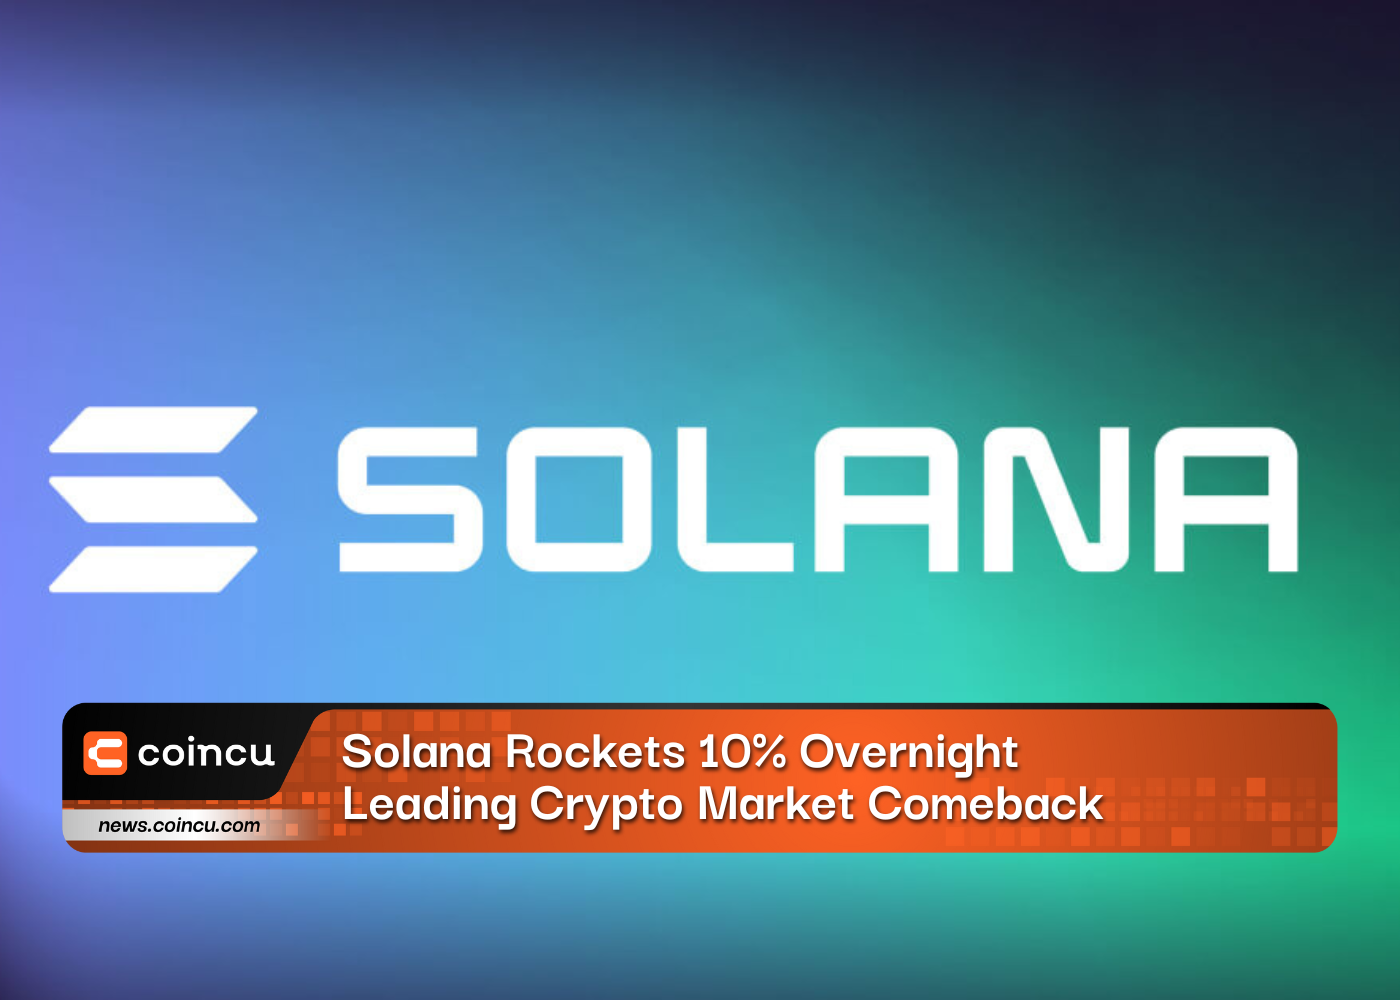 Solana Rockets 10 Overnight 1